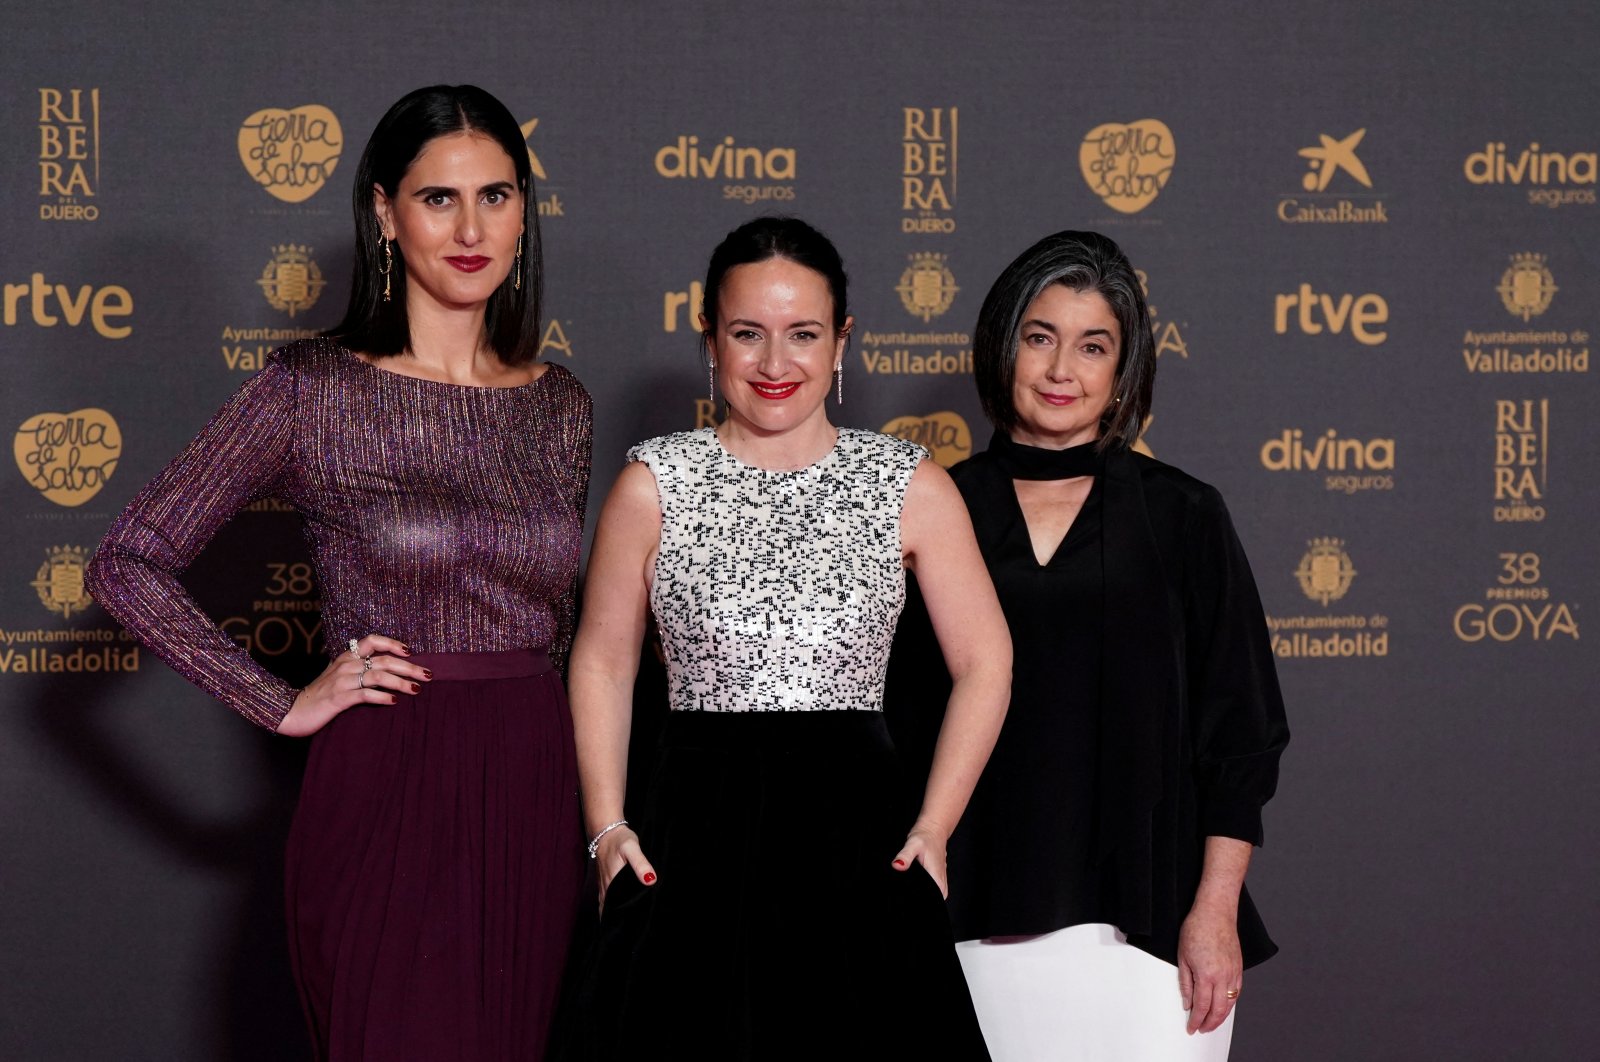 El documental nominado al Oscar narra el viaje de un periodista chileno con Alzheimer